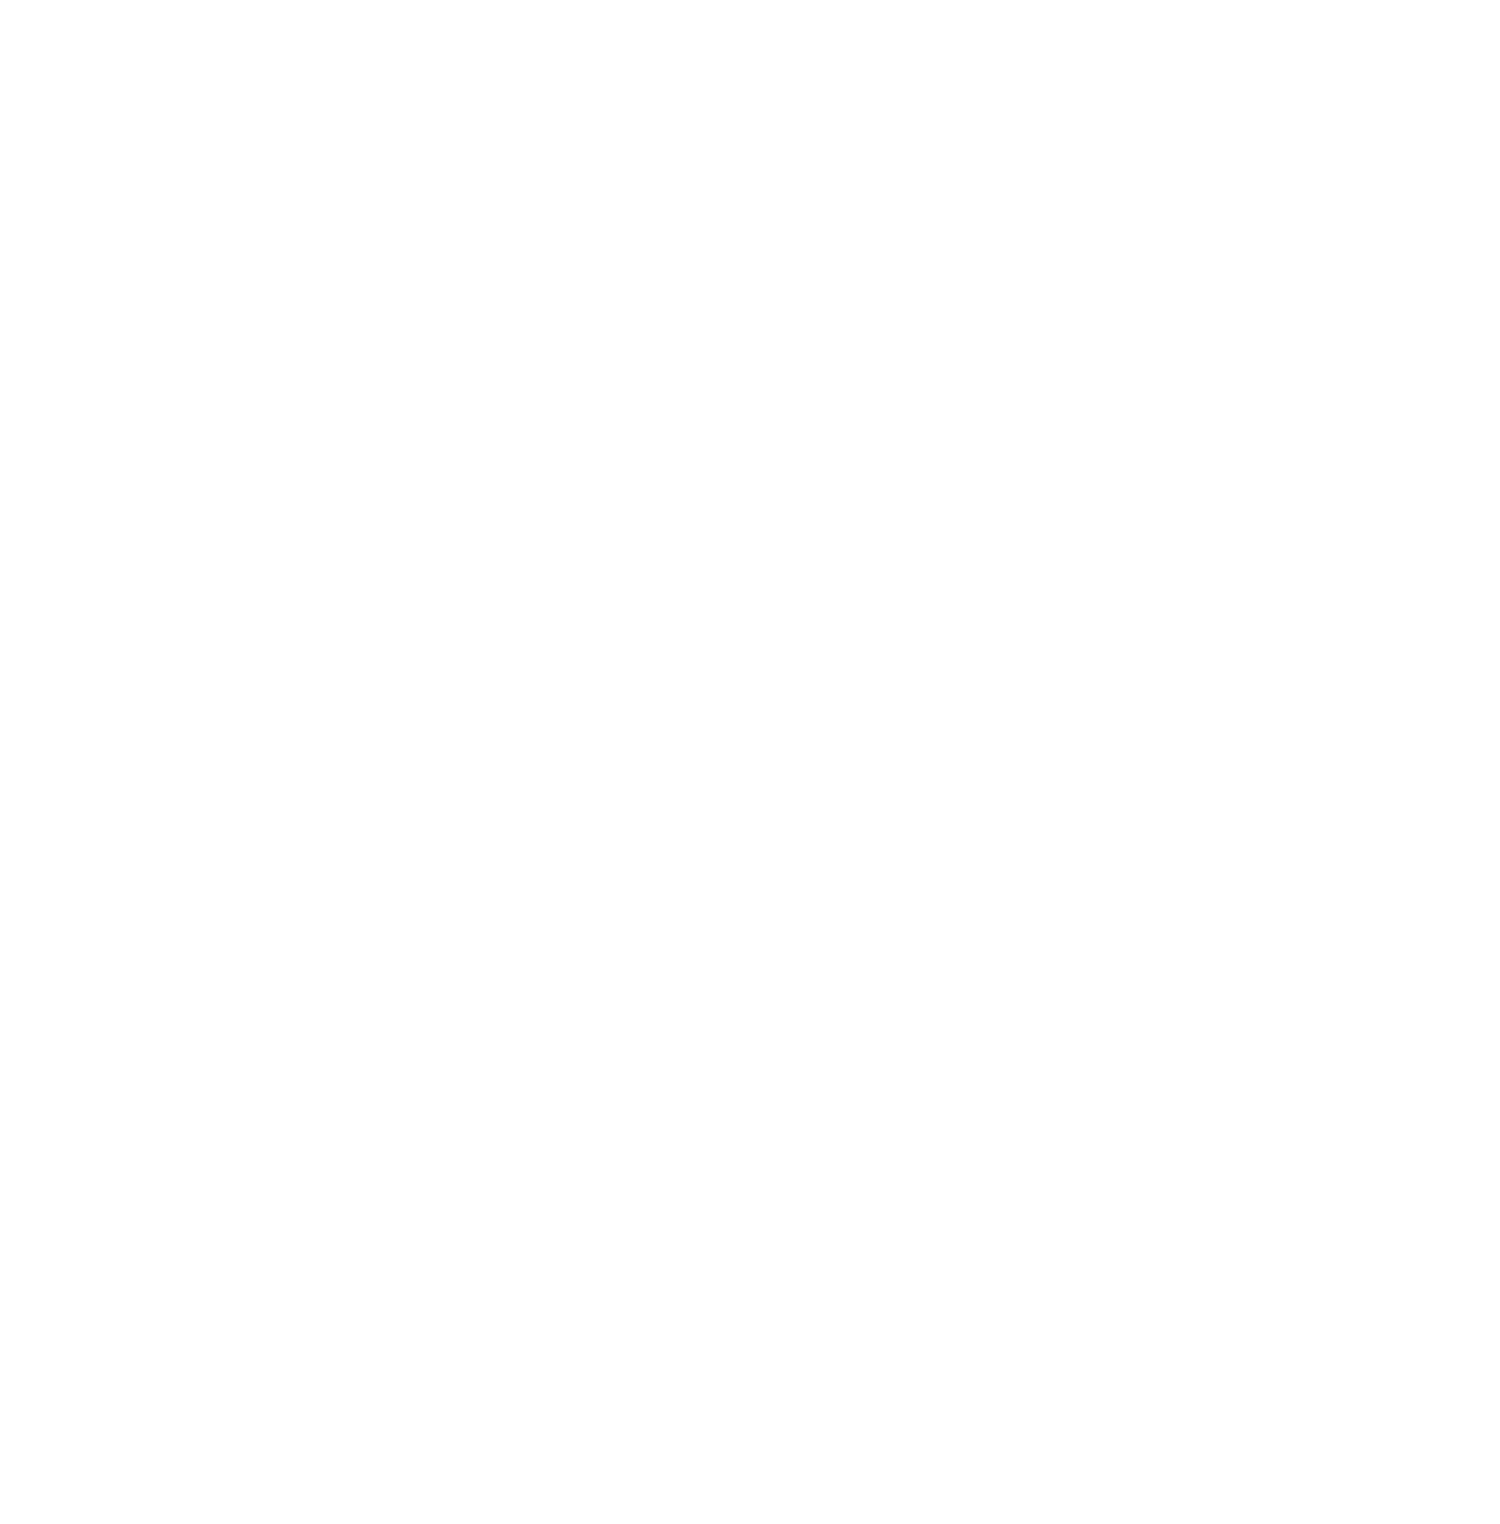 Skov Aero